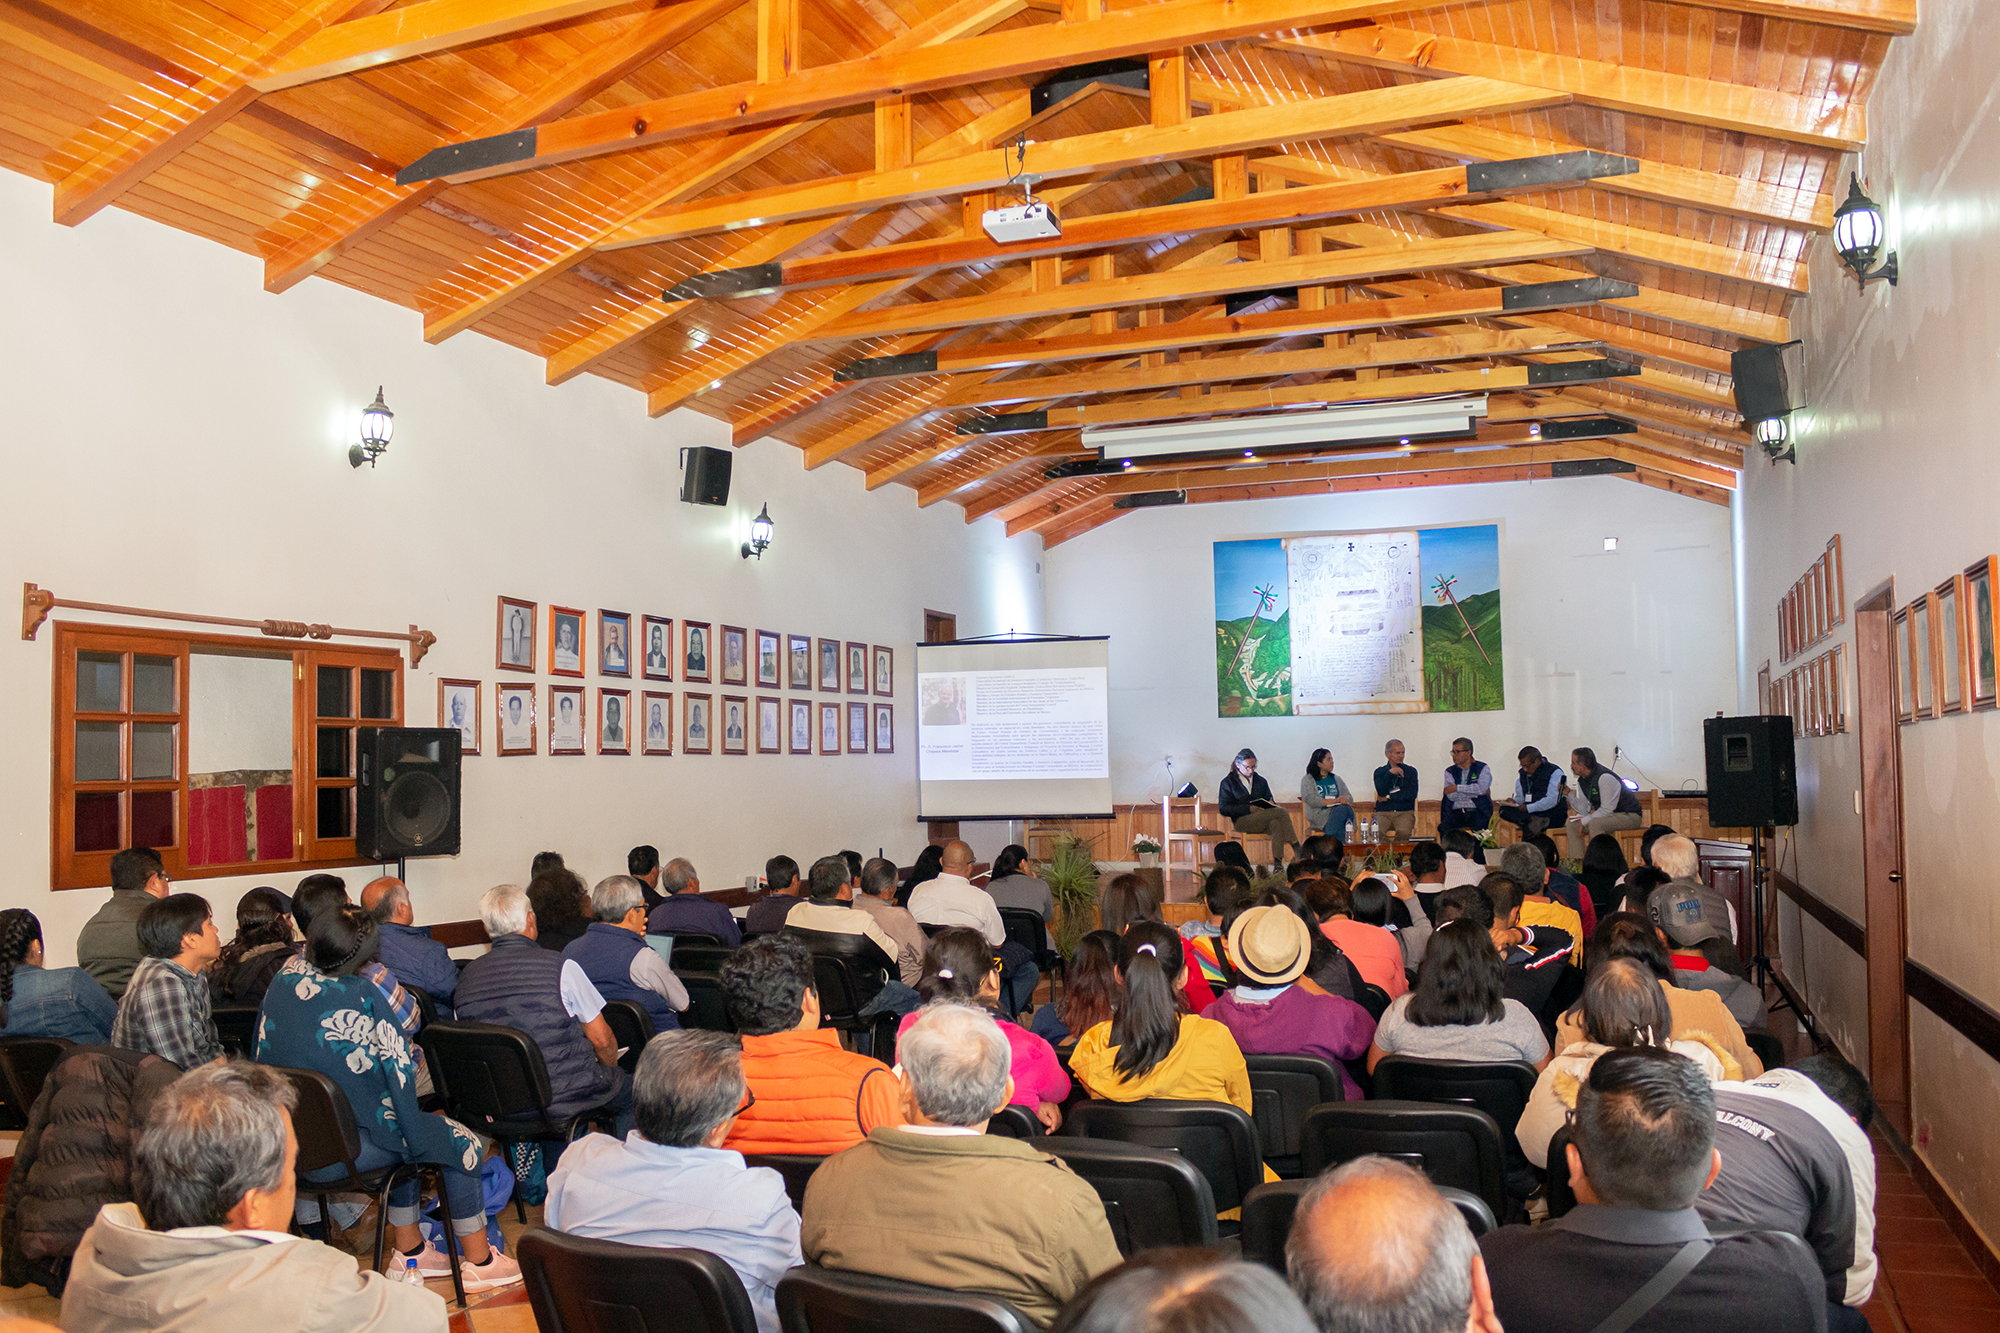 Festejan comunidades zapoteco-chinantecas 30 años de estar organizadas en torno al manejo de sus bosques